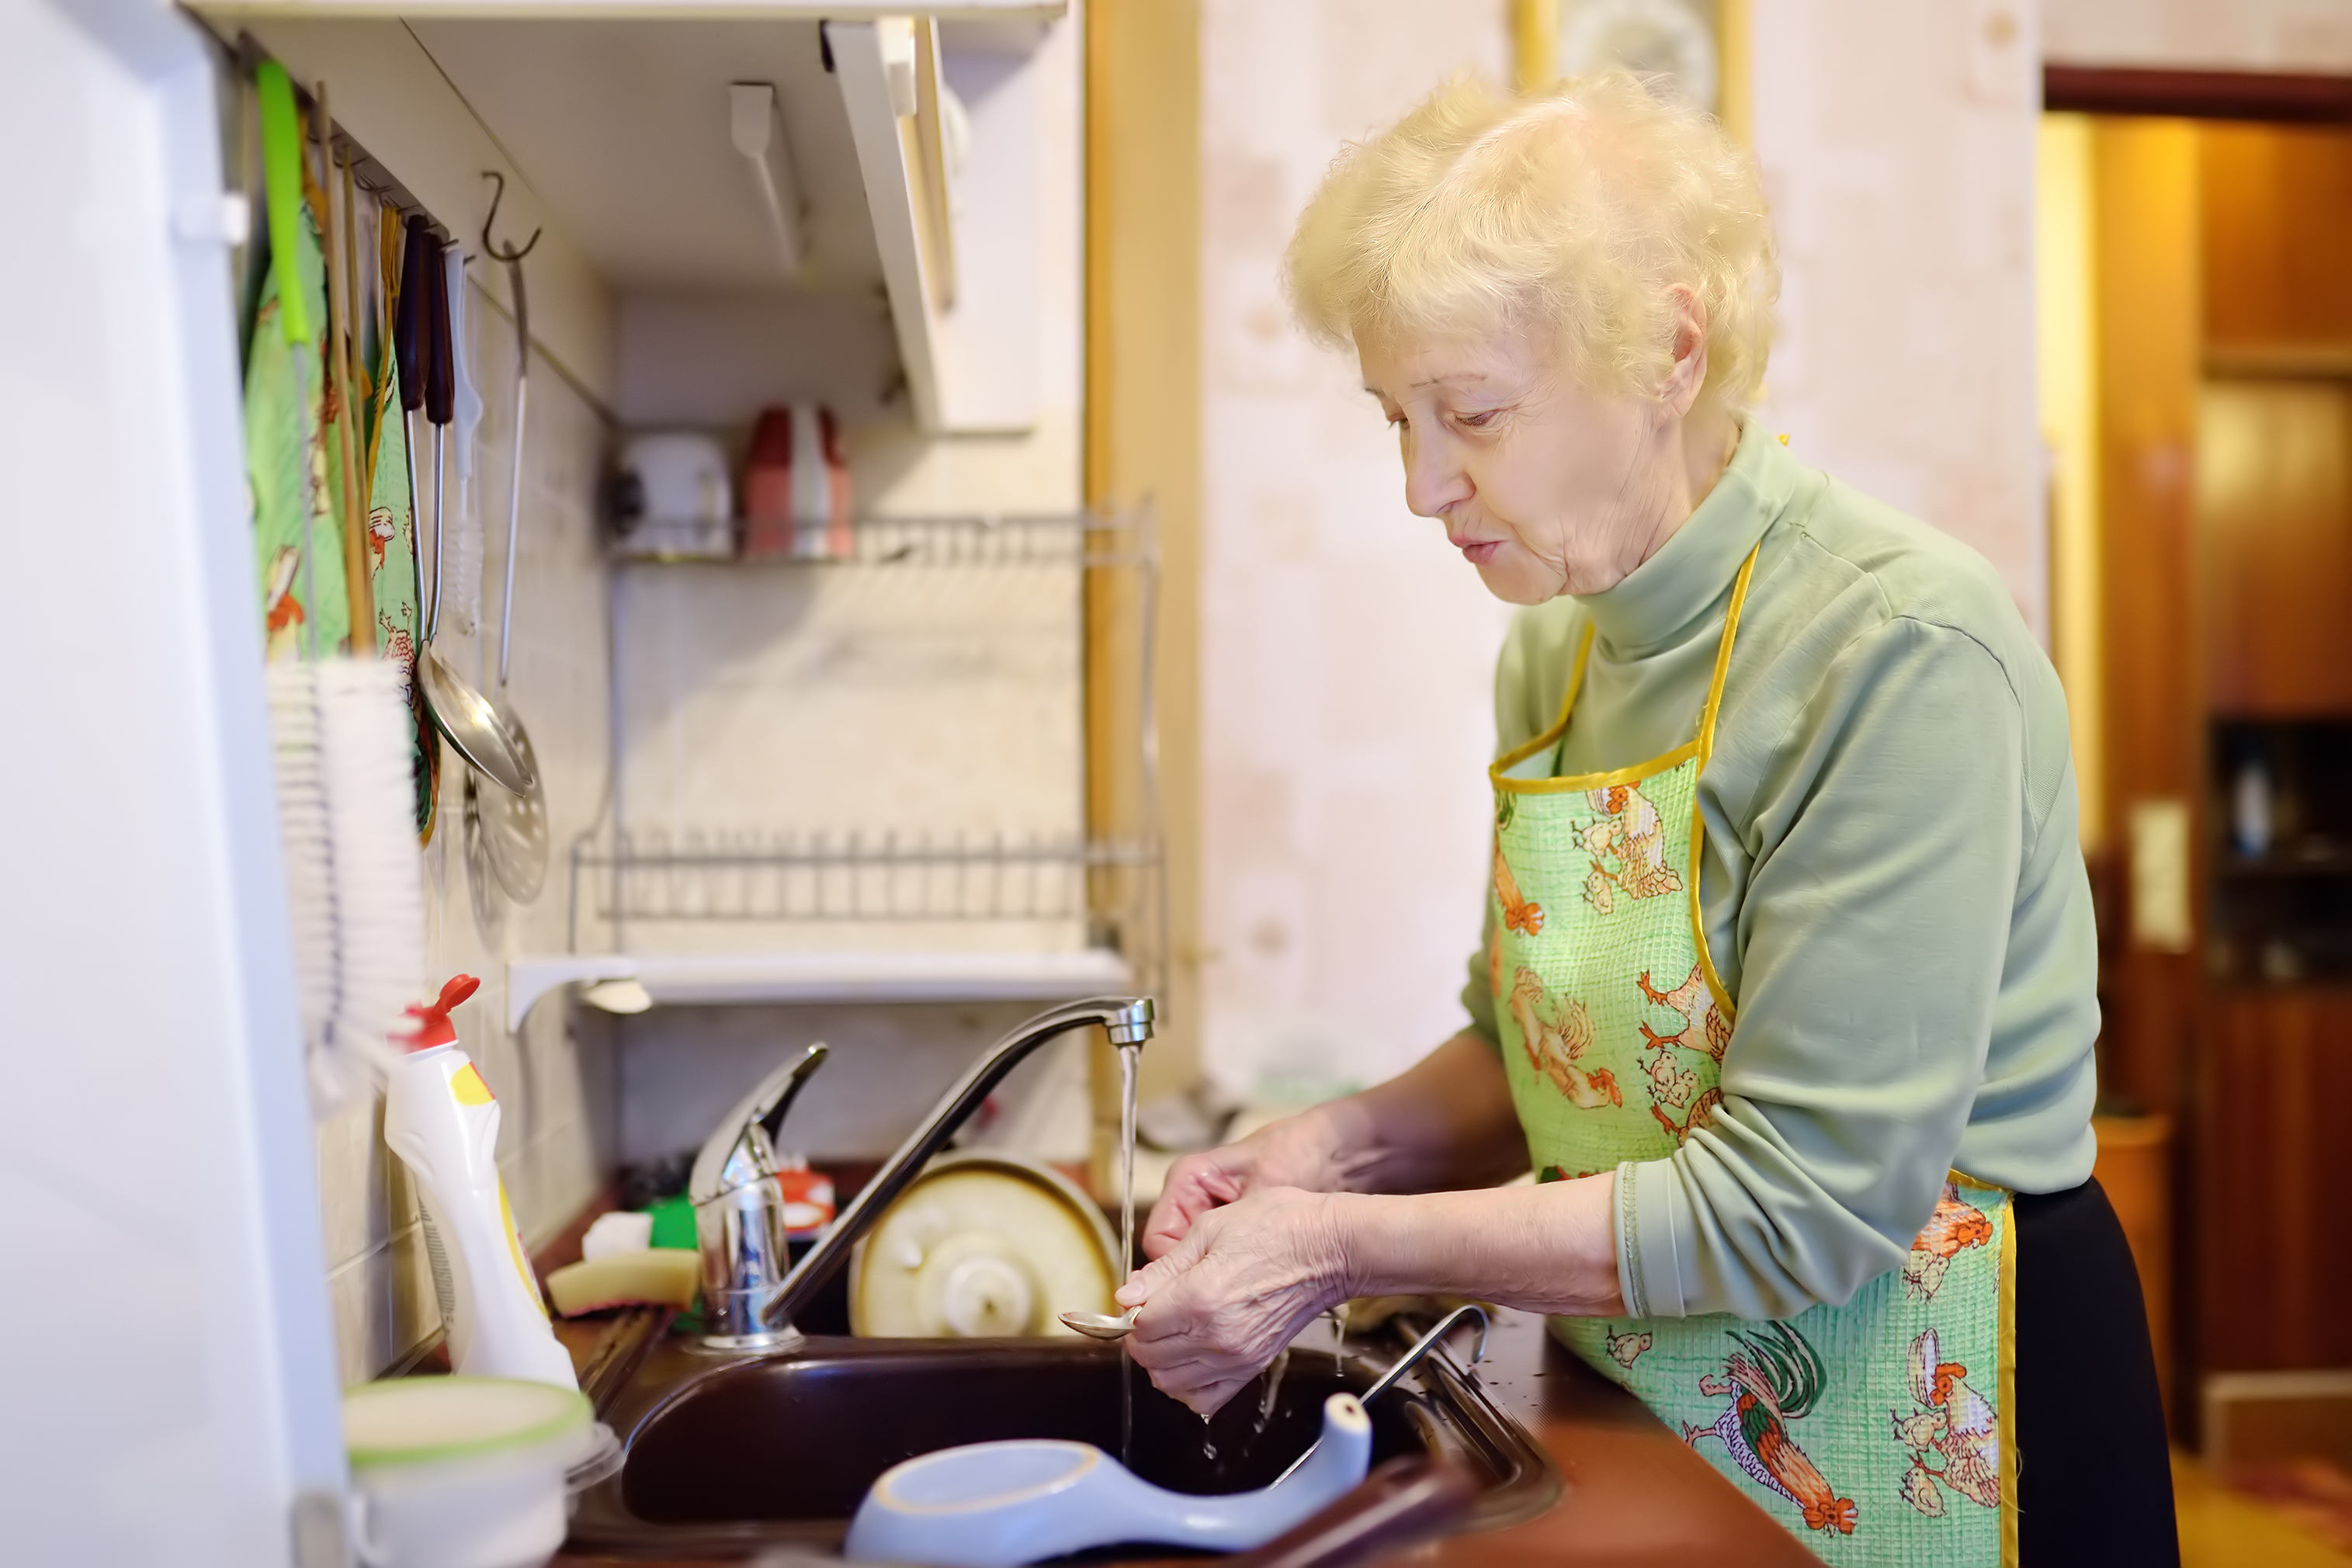 Una anciana lava los platos en la cocina | Foto: Shutterstock